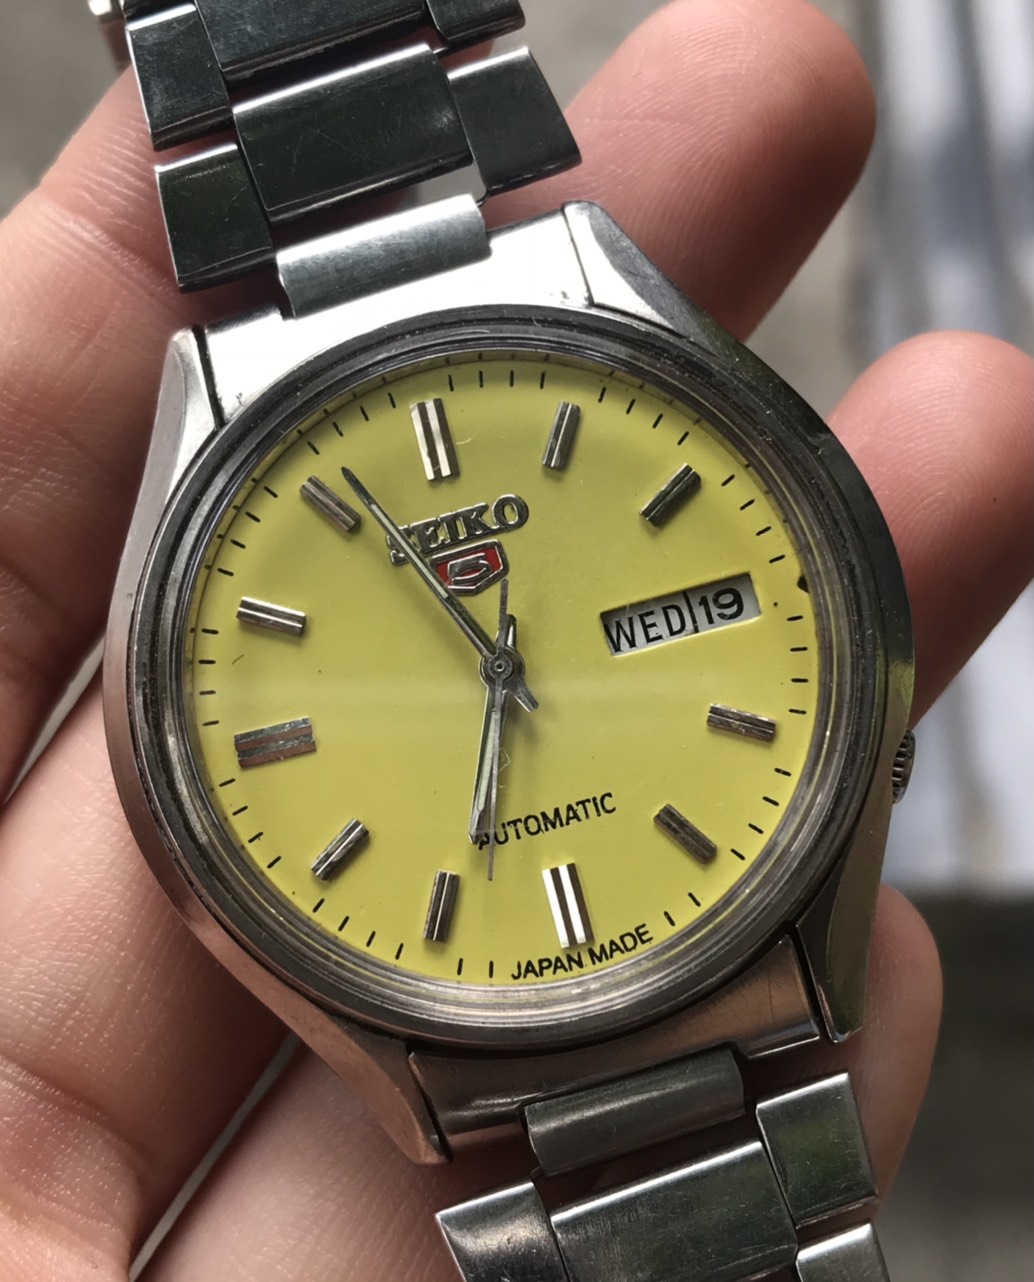 HCM]Đồng hồ Seiko 5 Automatic mặt màu vàng có ô cửa lịch 